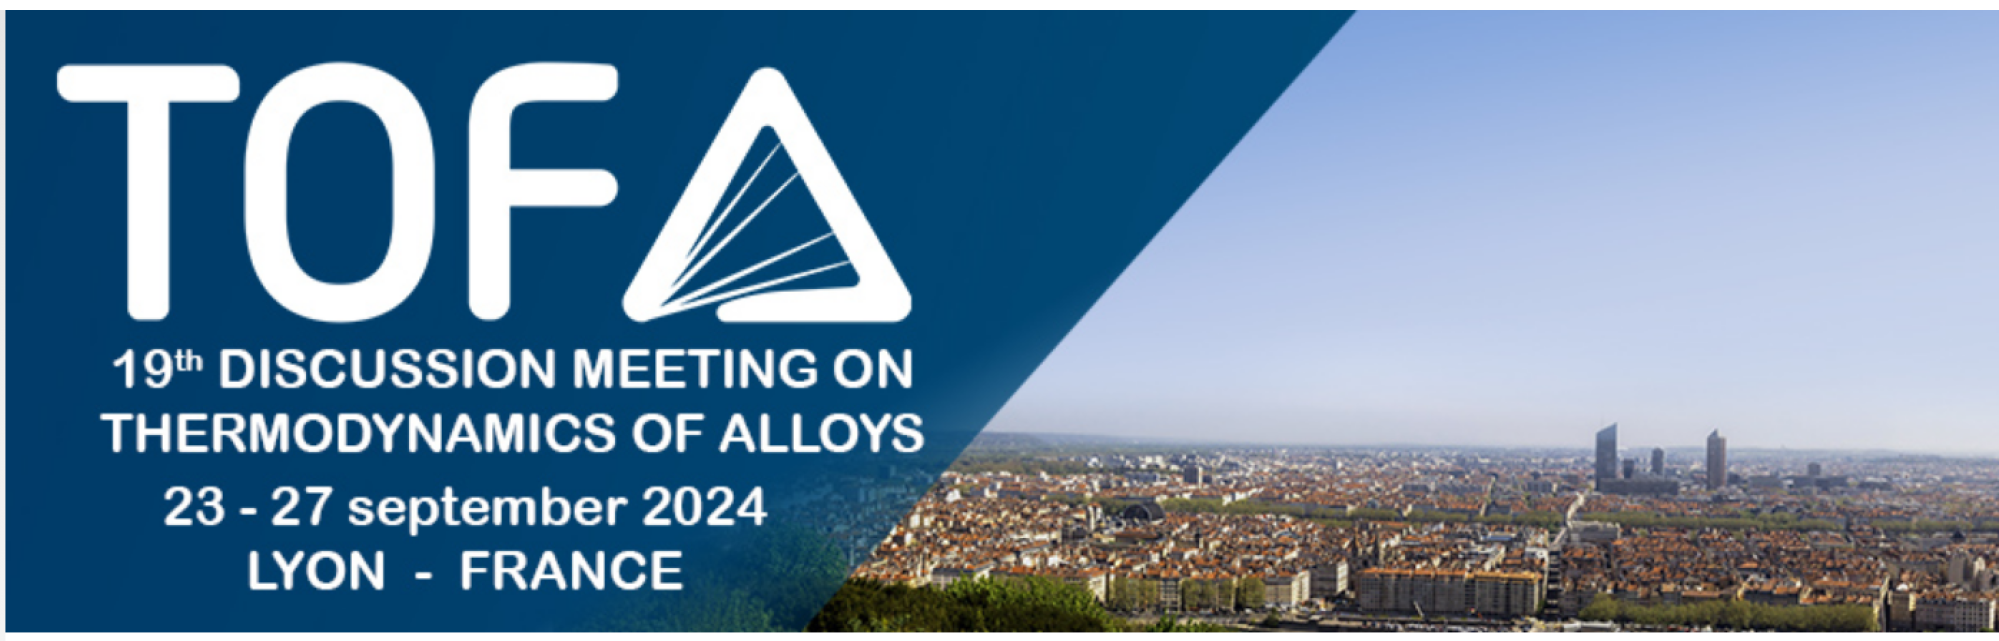 TOFA 2024 -19th meeting on Thermodynamics of Alloys